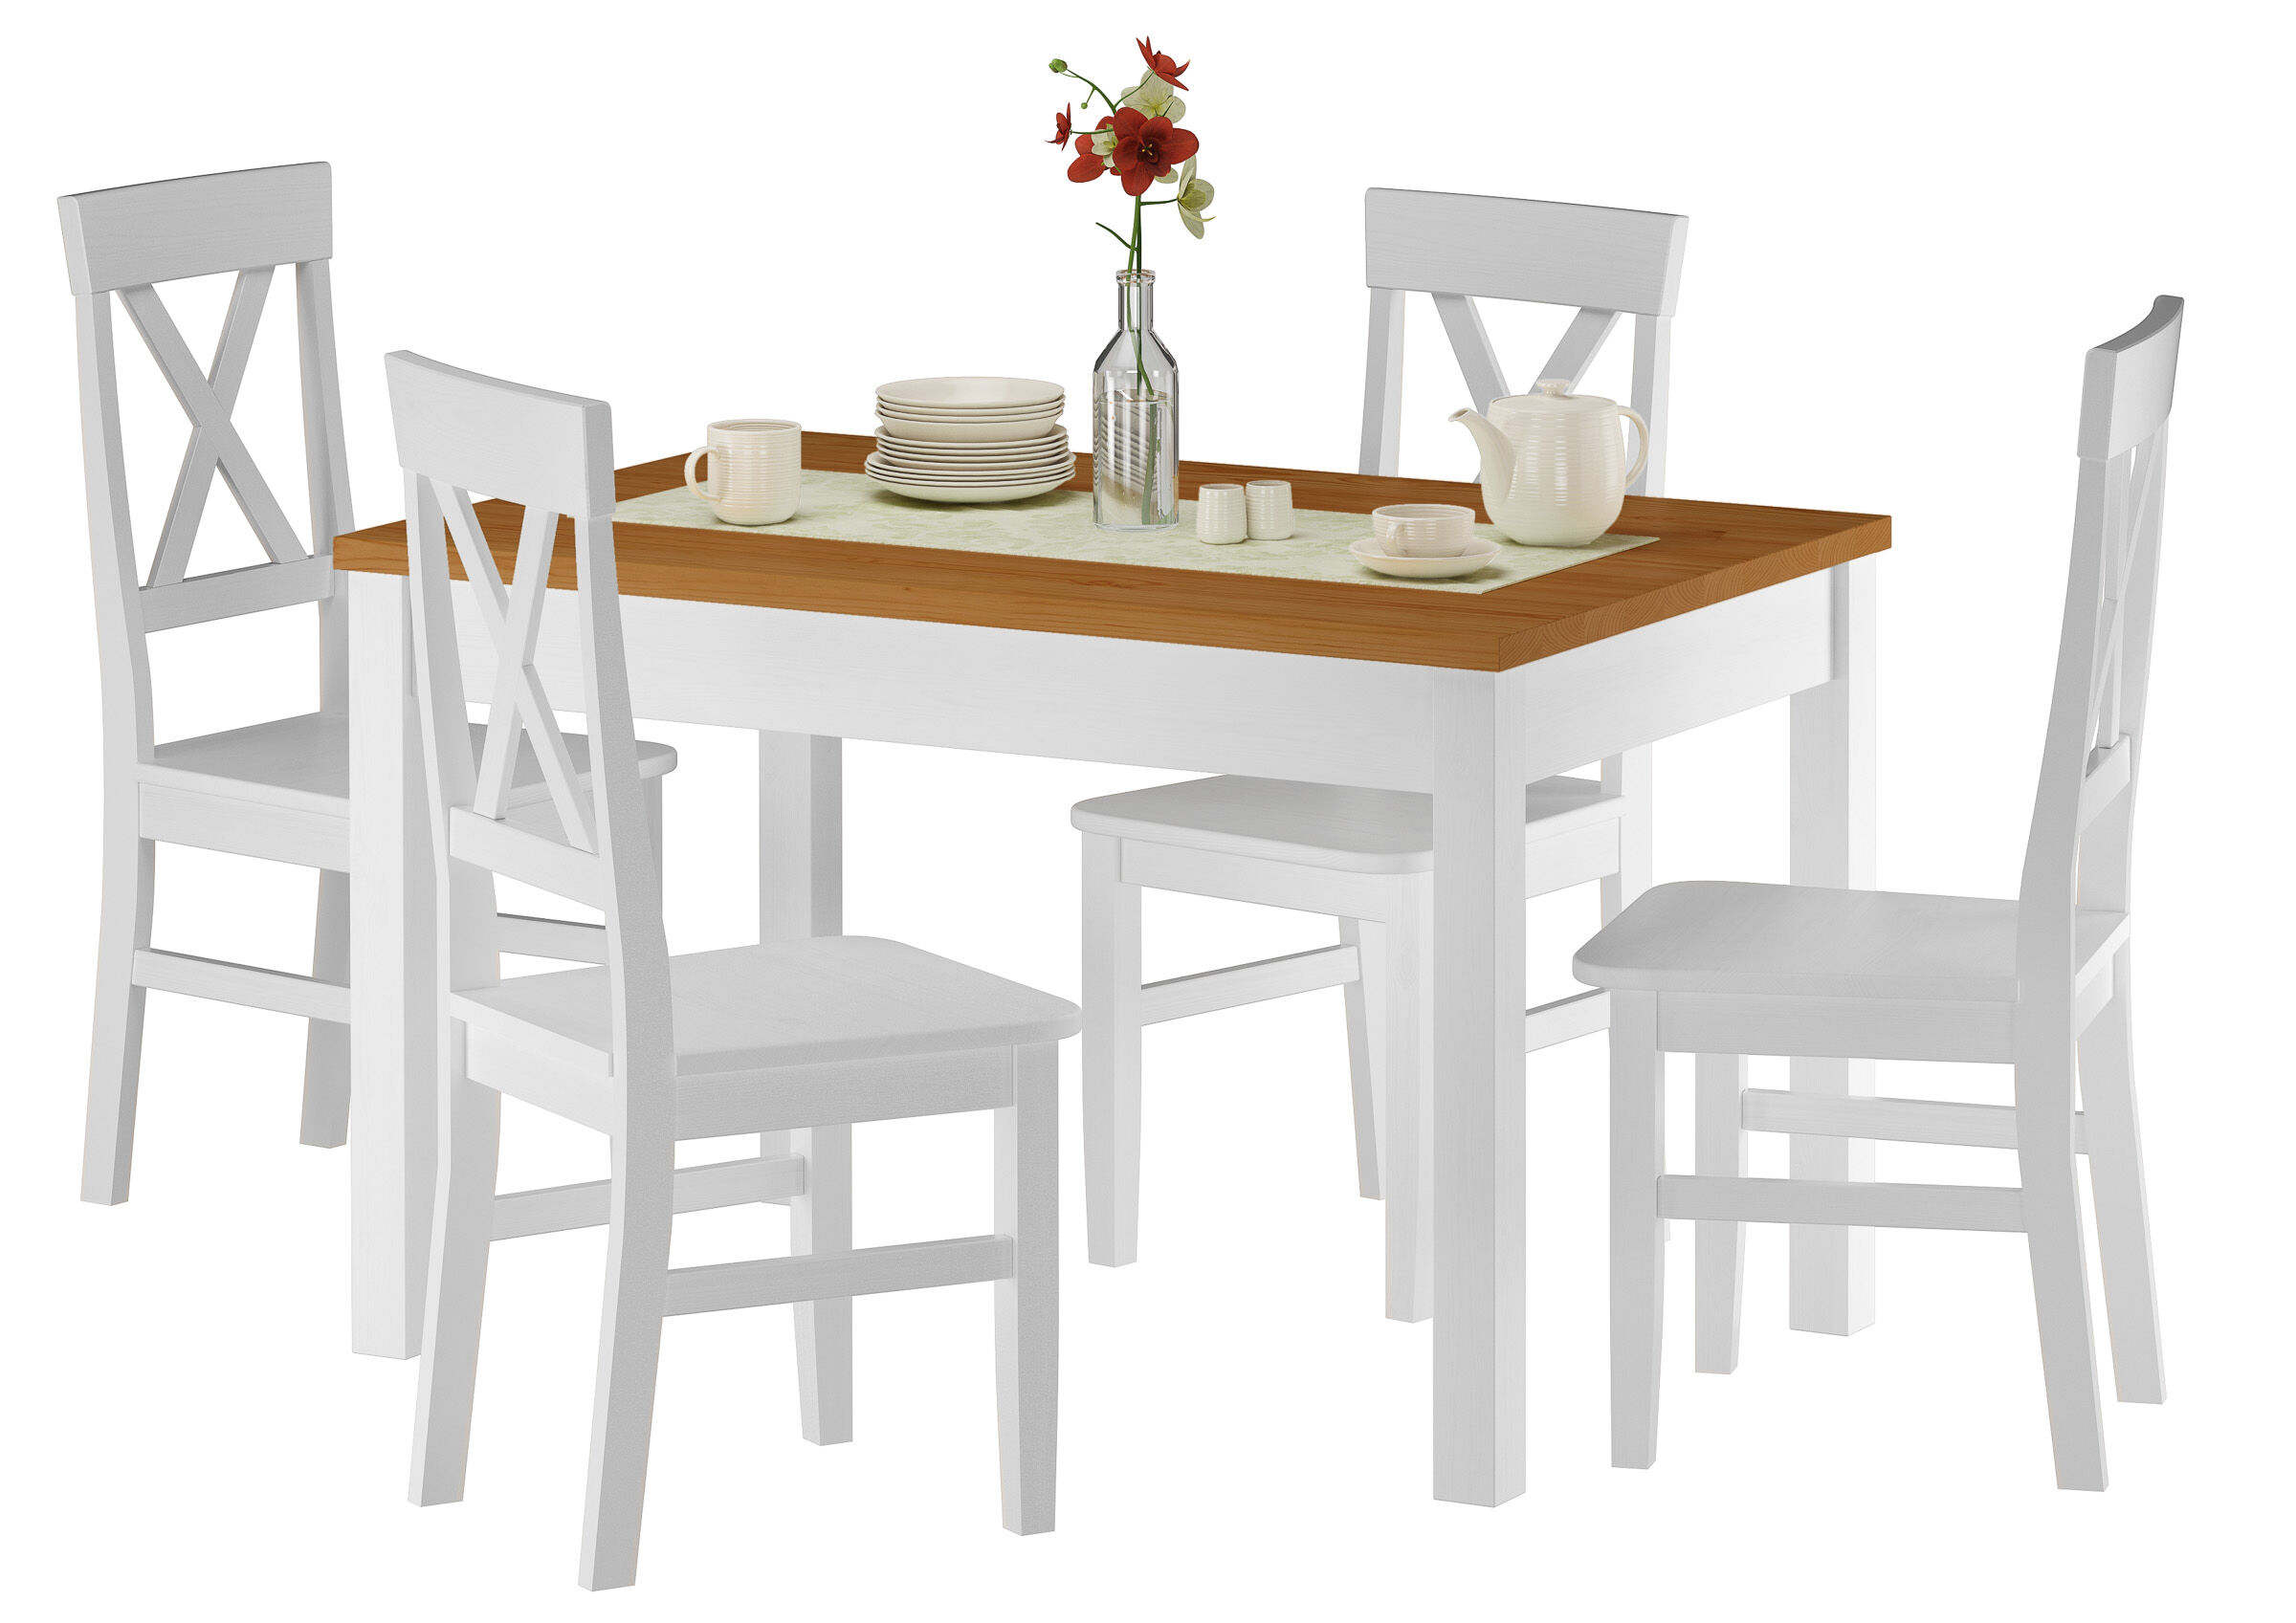 Essgruppe mit stabilem Esszimmertisch aus massiver Kiefer, waschweiß lackiert, Tischplatte eiche gebeizt, 80 x 120 cm, Tischbeine mit dekorativen Querrillen